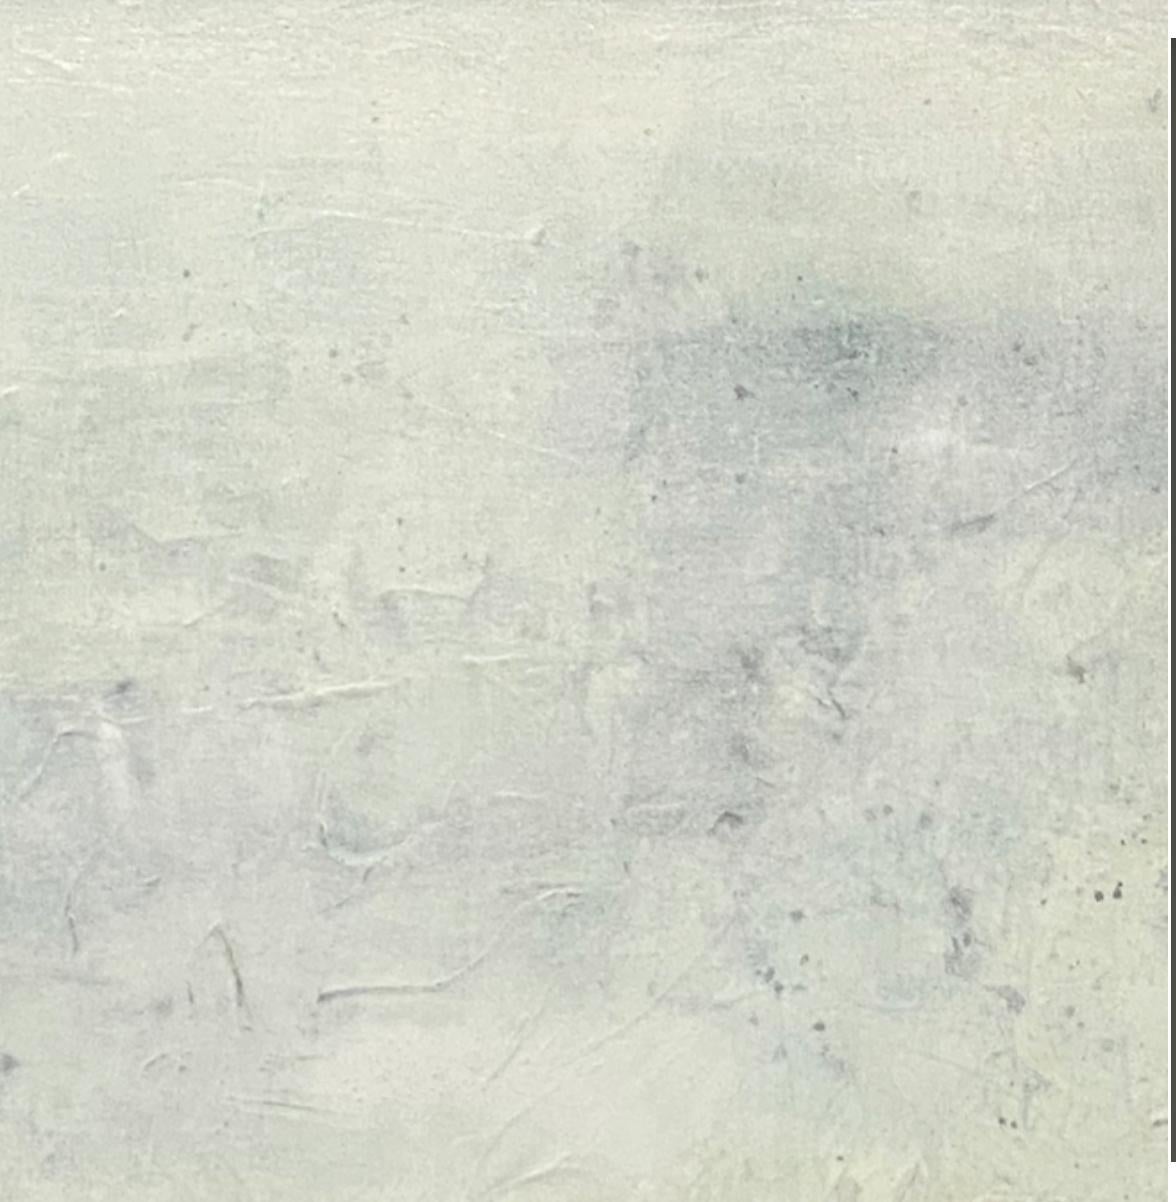 Es war ein nebliges Tag, zeitgenössische Landschaft, Meeresschaum, ätherische abstrakte Malerei   (Abstrakter Impressionismus), Painting, von Juanita Bellavance 